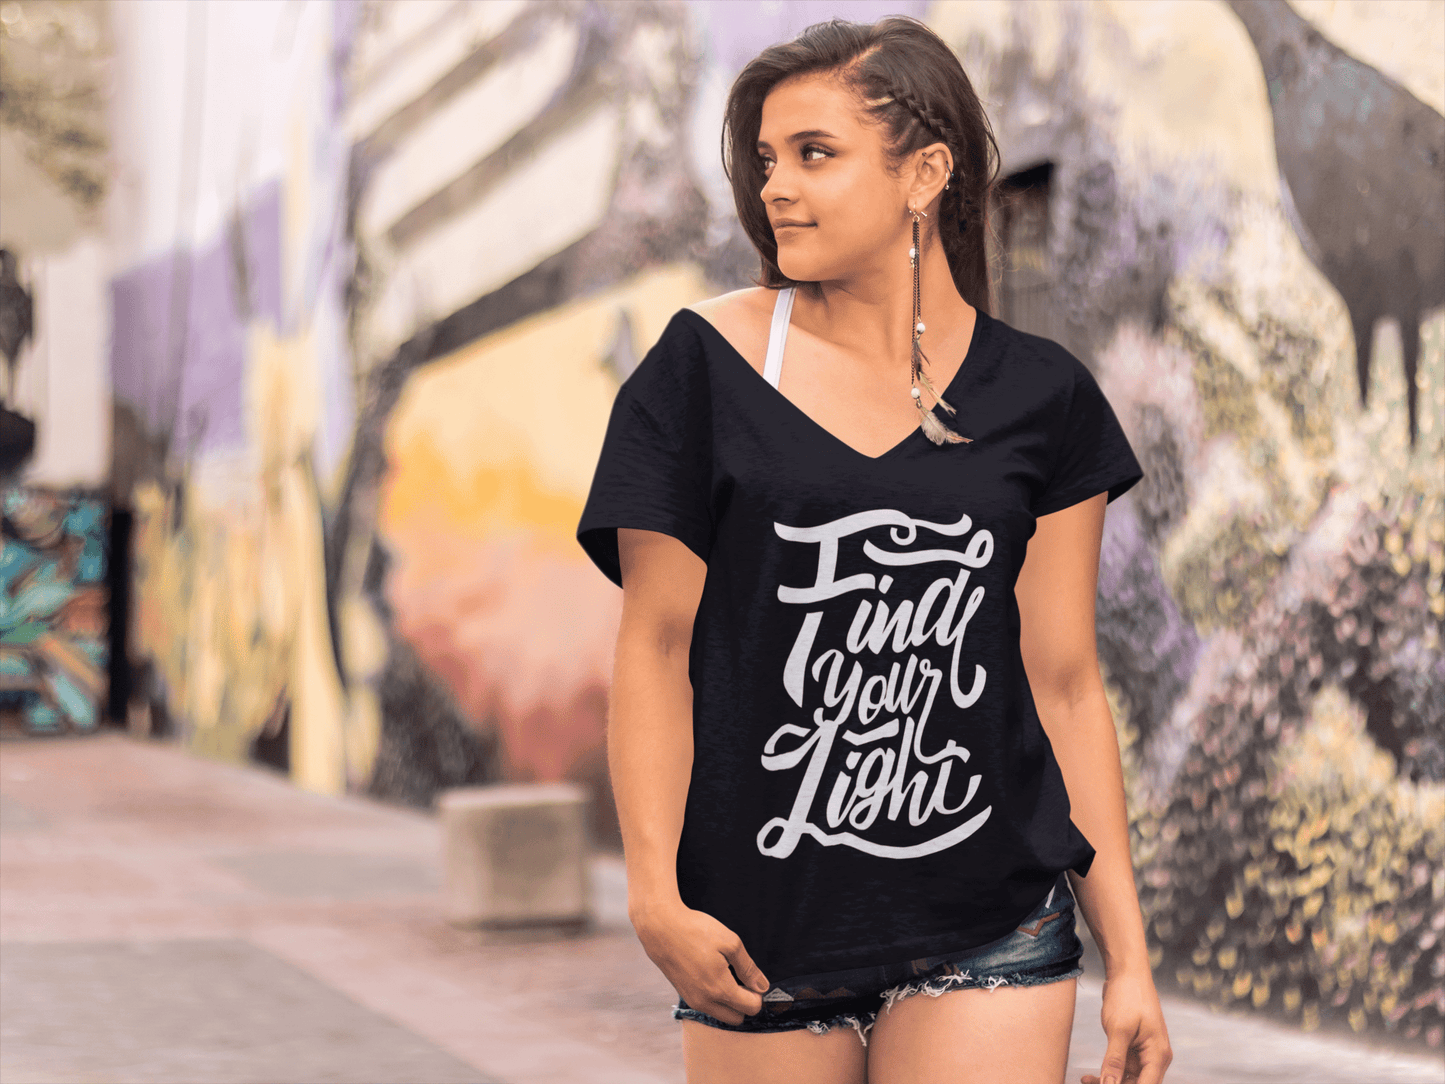 T-shirt ULTRABASIC pour femmes Trouvez votre lumière - T-shirt avec slogan de motivation inspirant